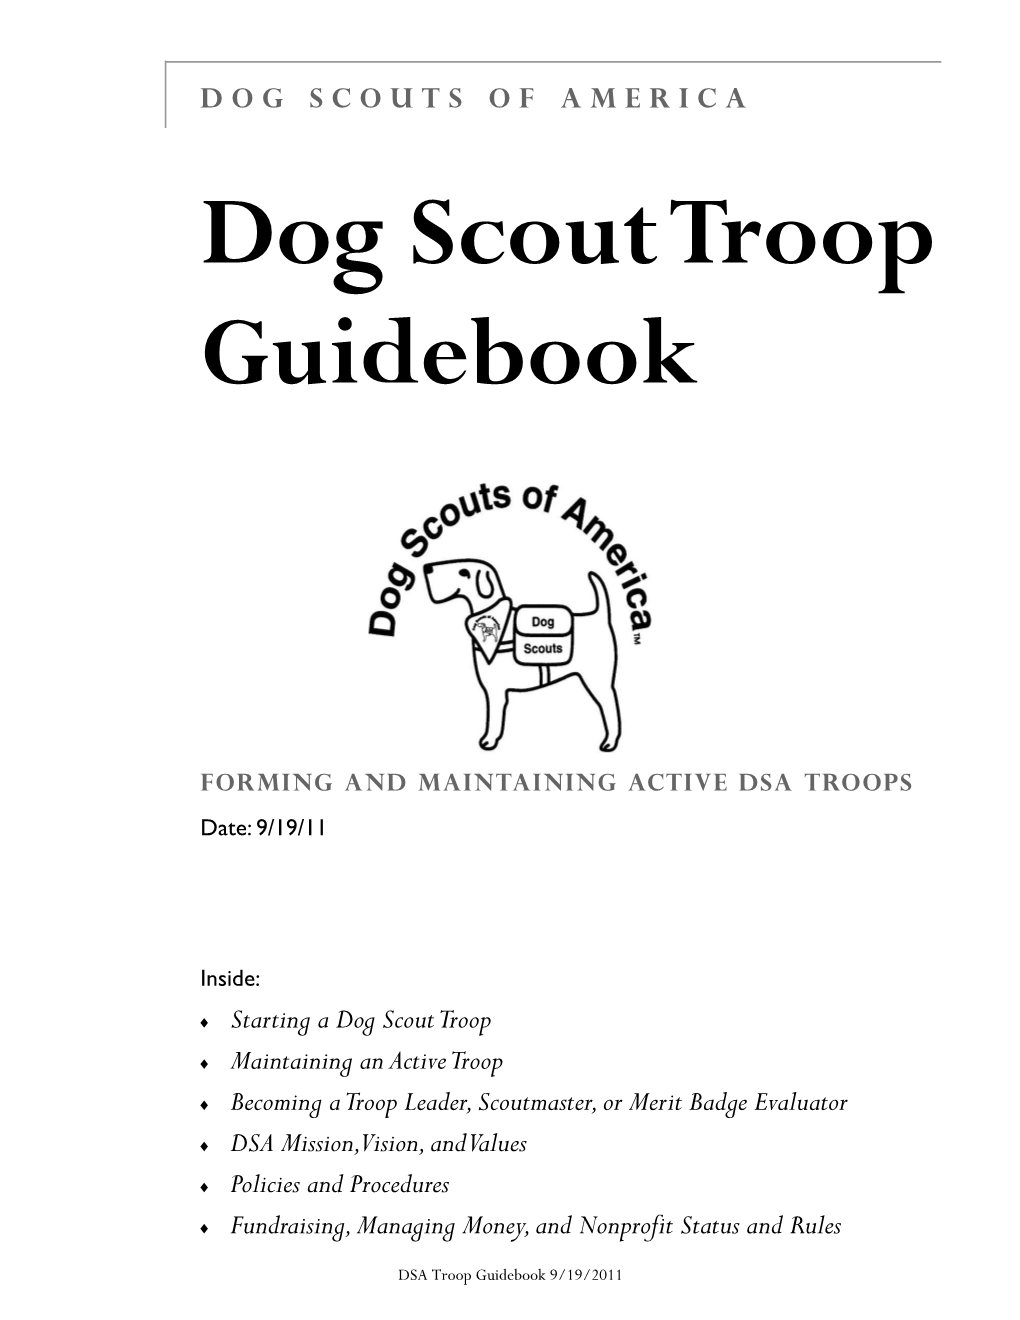 Dog Scout Troop Guidebook 2011-9-19